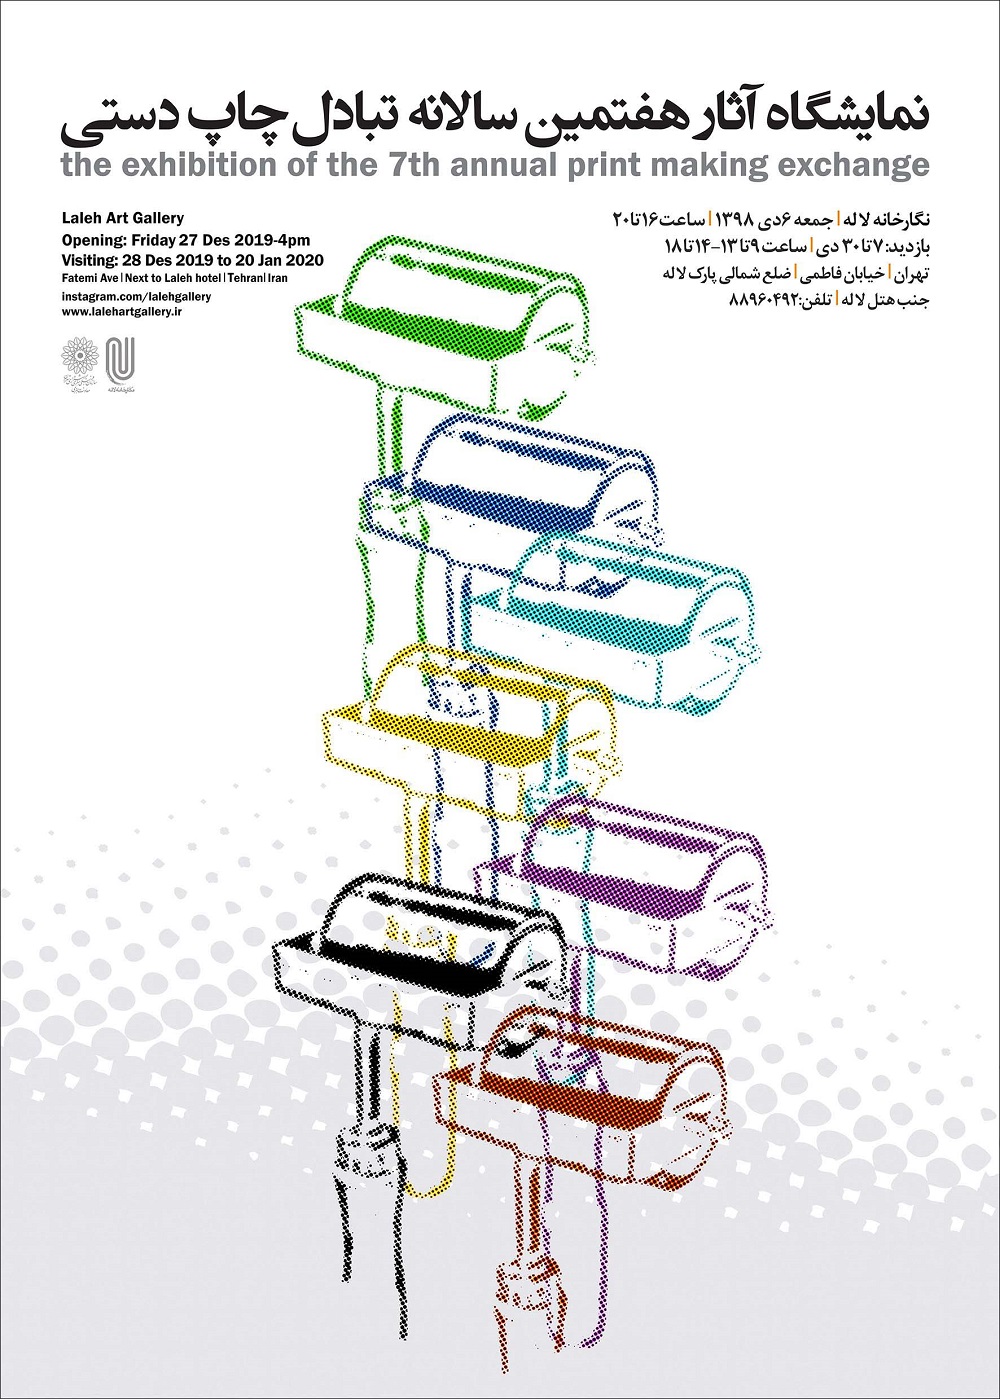 نمایش آثار هفتمین سالانه تبادل چاپ دستی در نگارخانه لاله